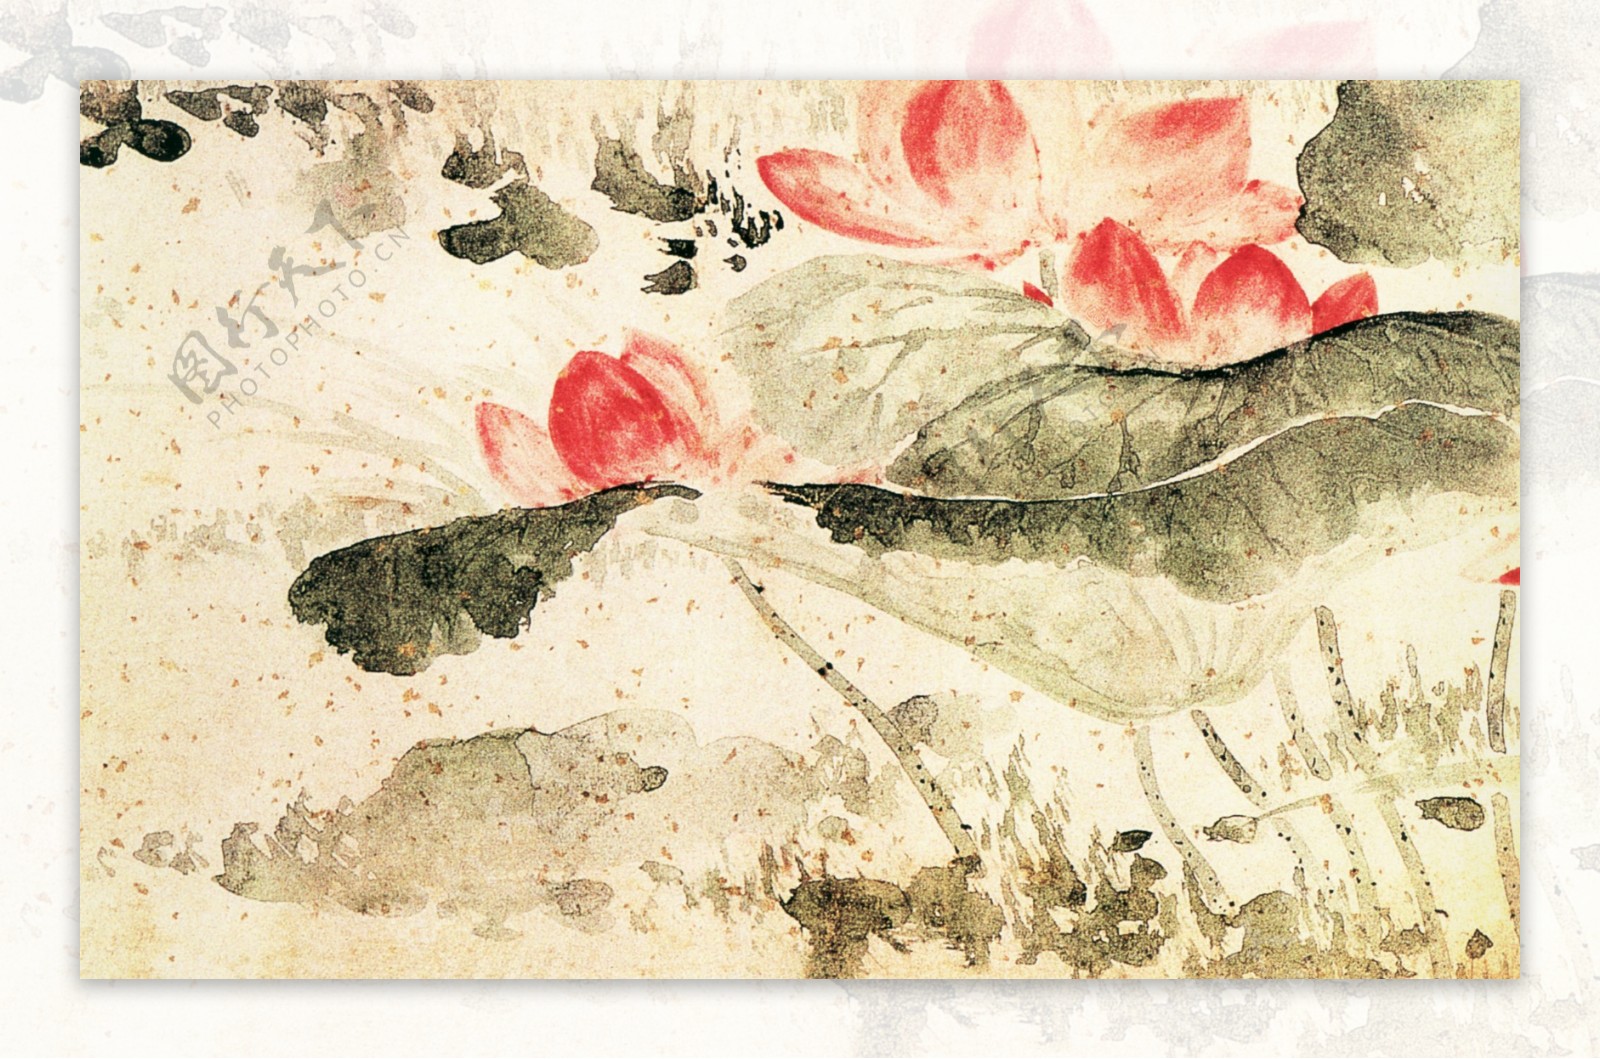 植物喜鹊白鹤牡丹花荷花中国风中华艺术绘画